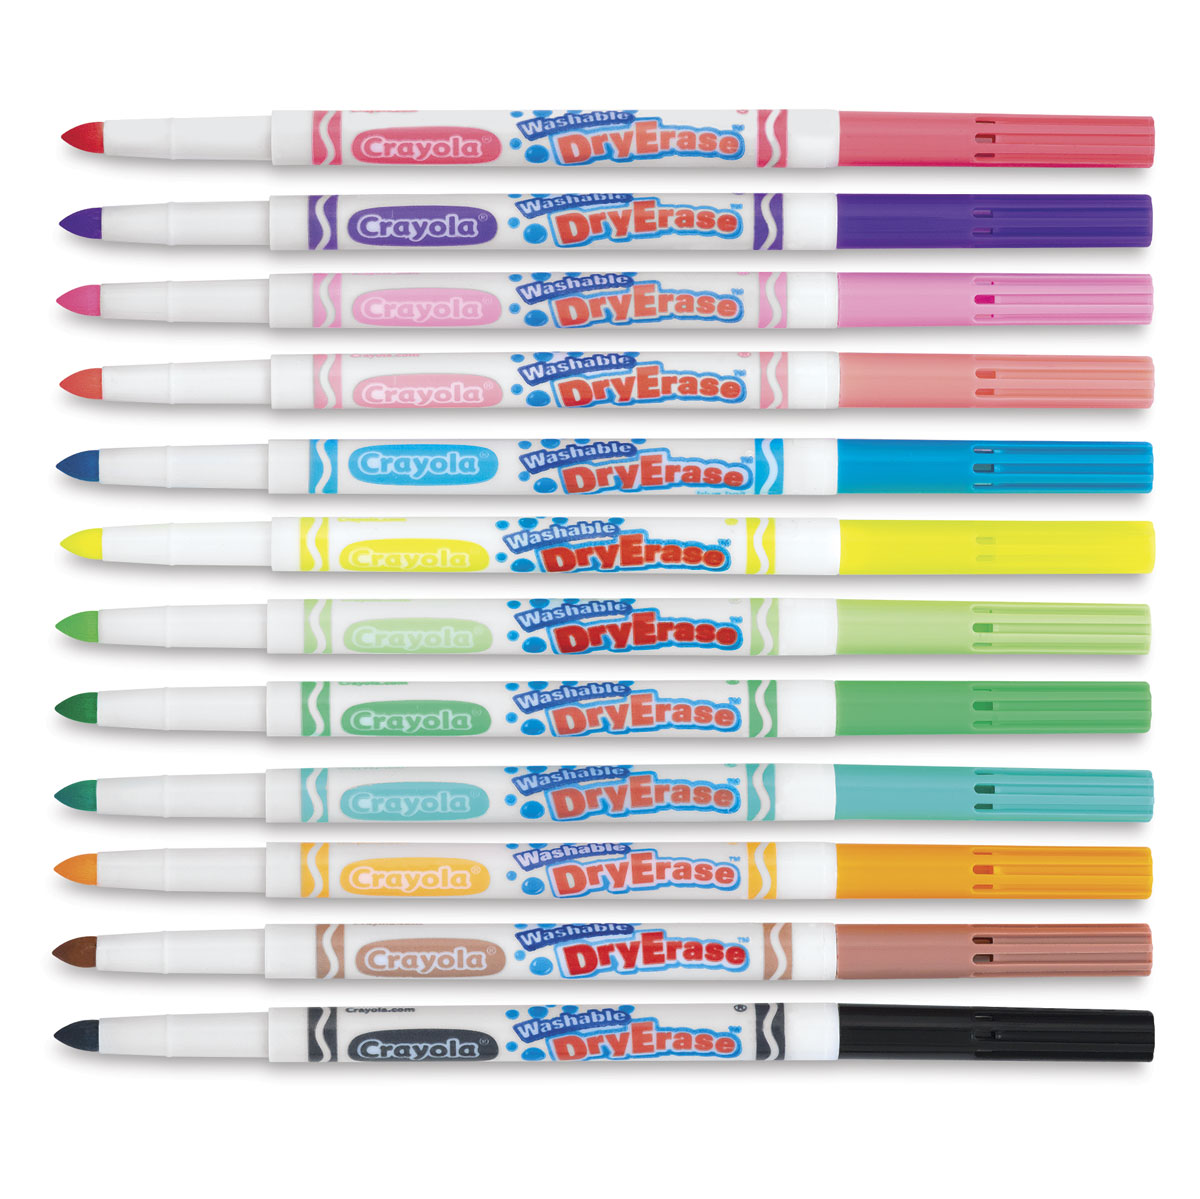 Crayola, Washable Dry-Erase Markers, 12 Pieces